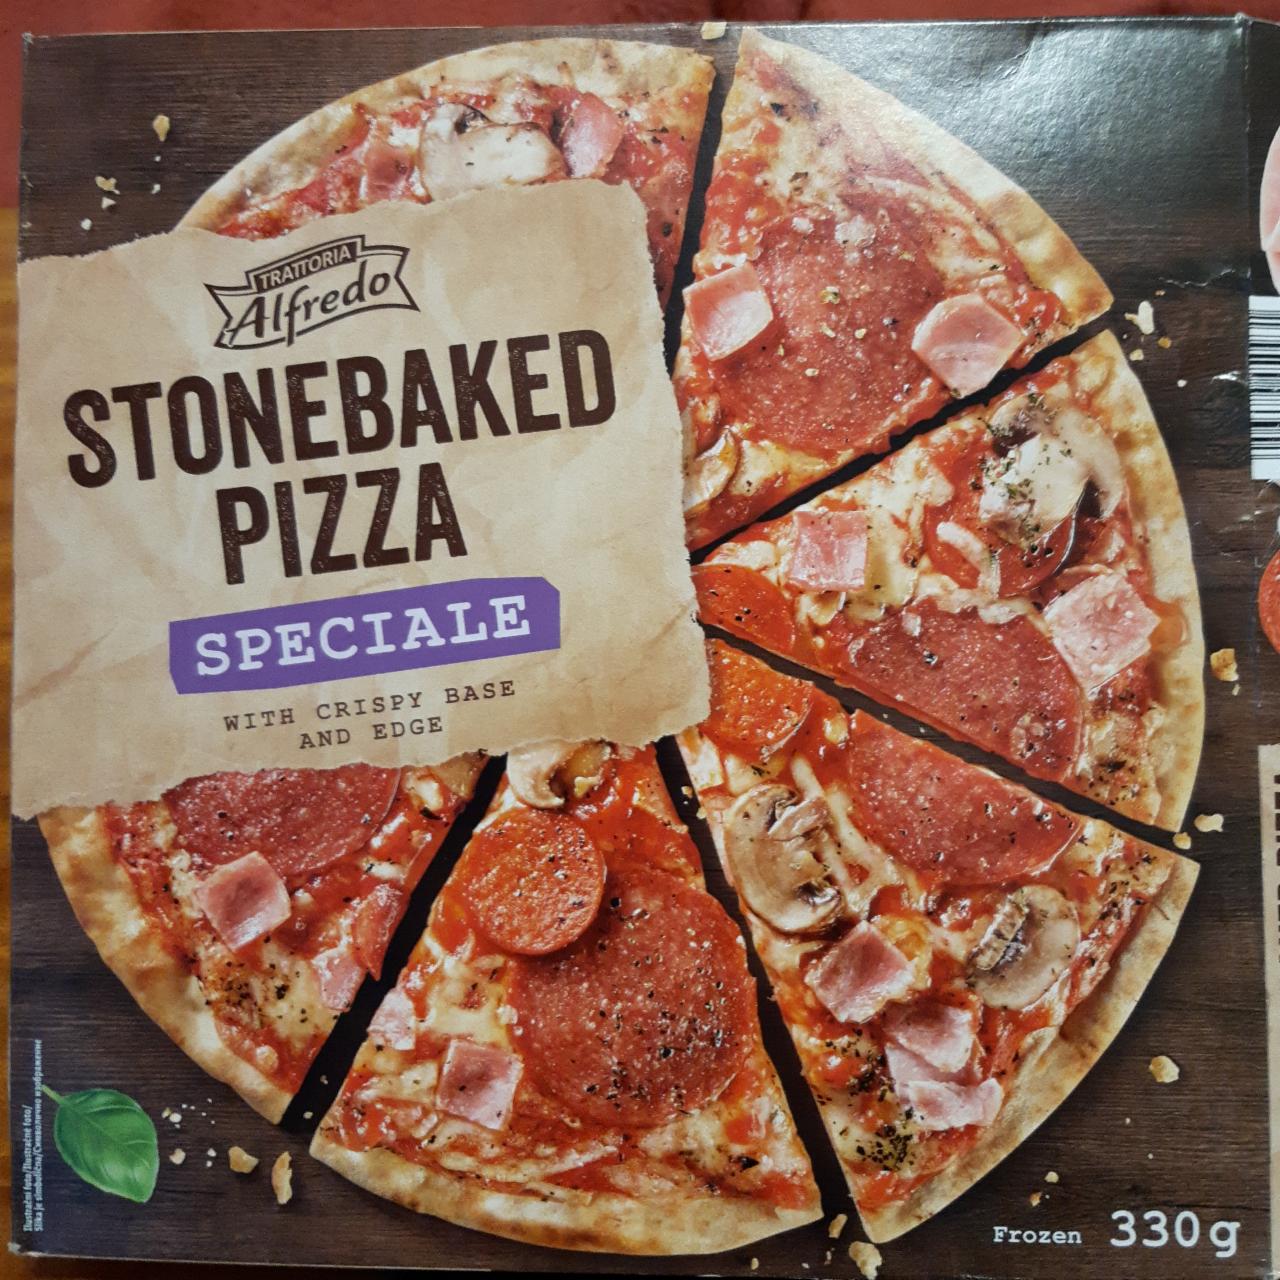 Fotografie - Stonebaked Pizza Speciale Trattoria Alfredo